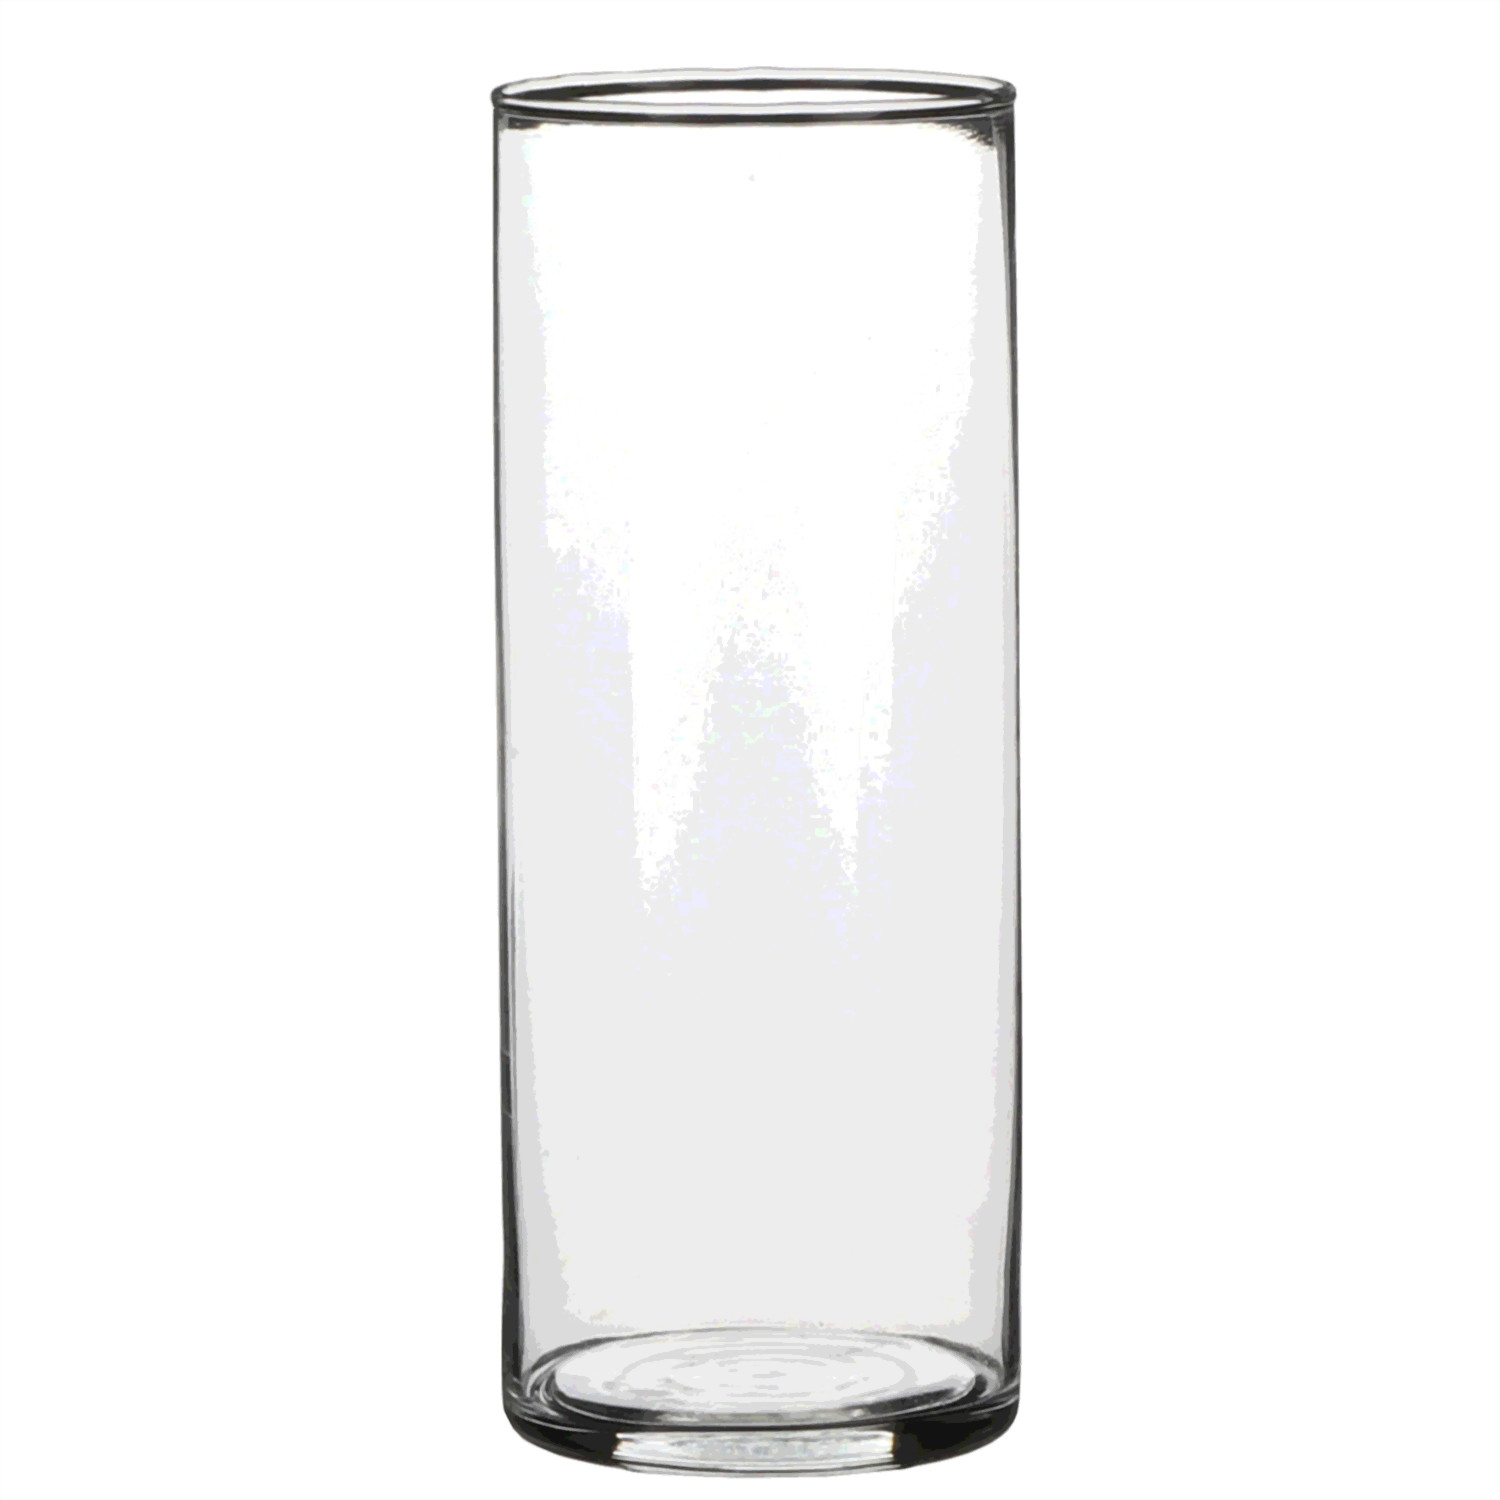 1x Glazen cilinder vaas-vazen 24 cm rond